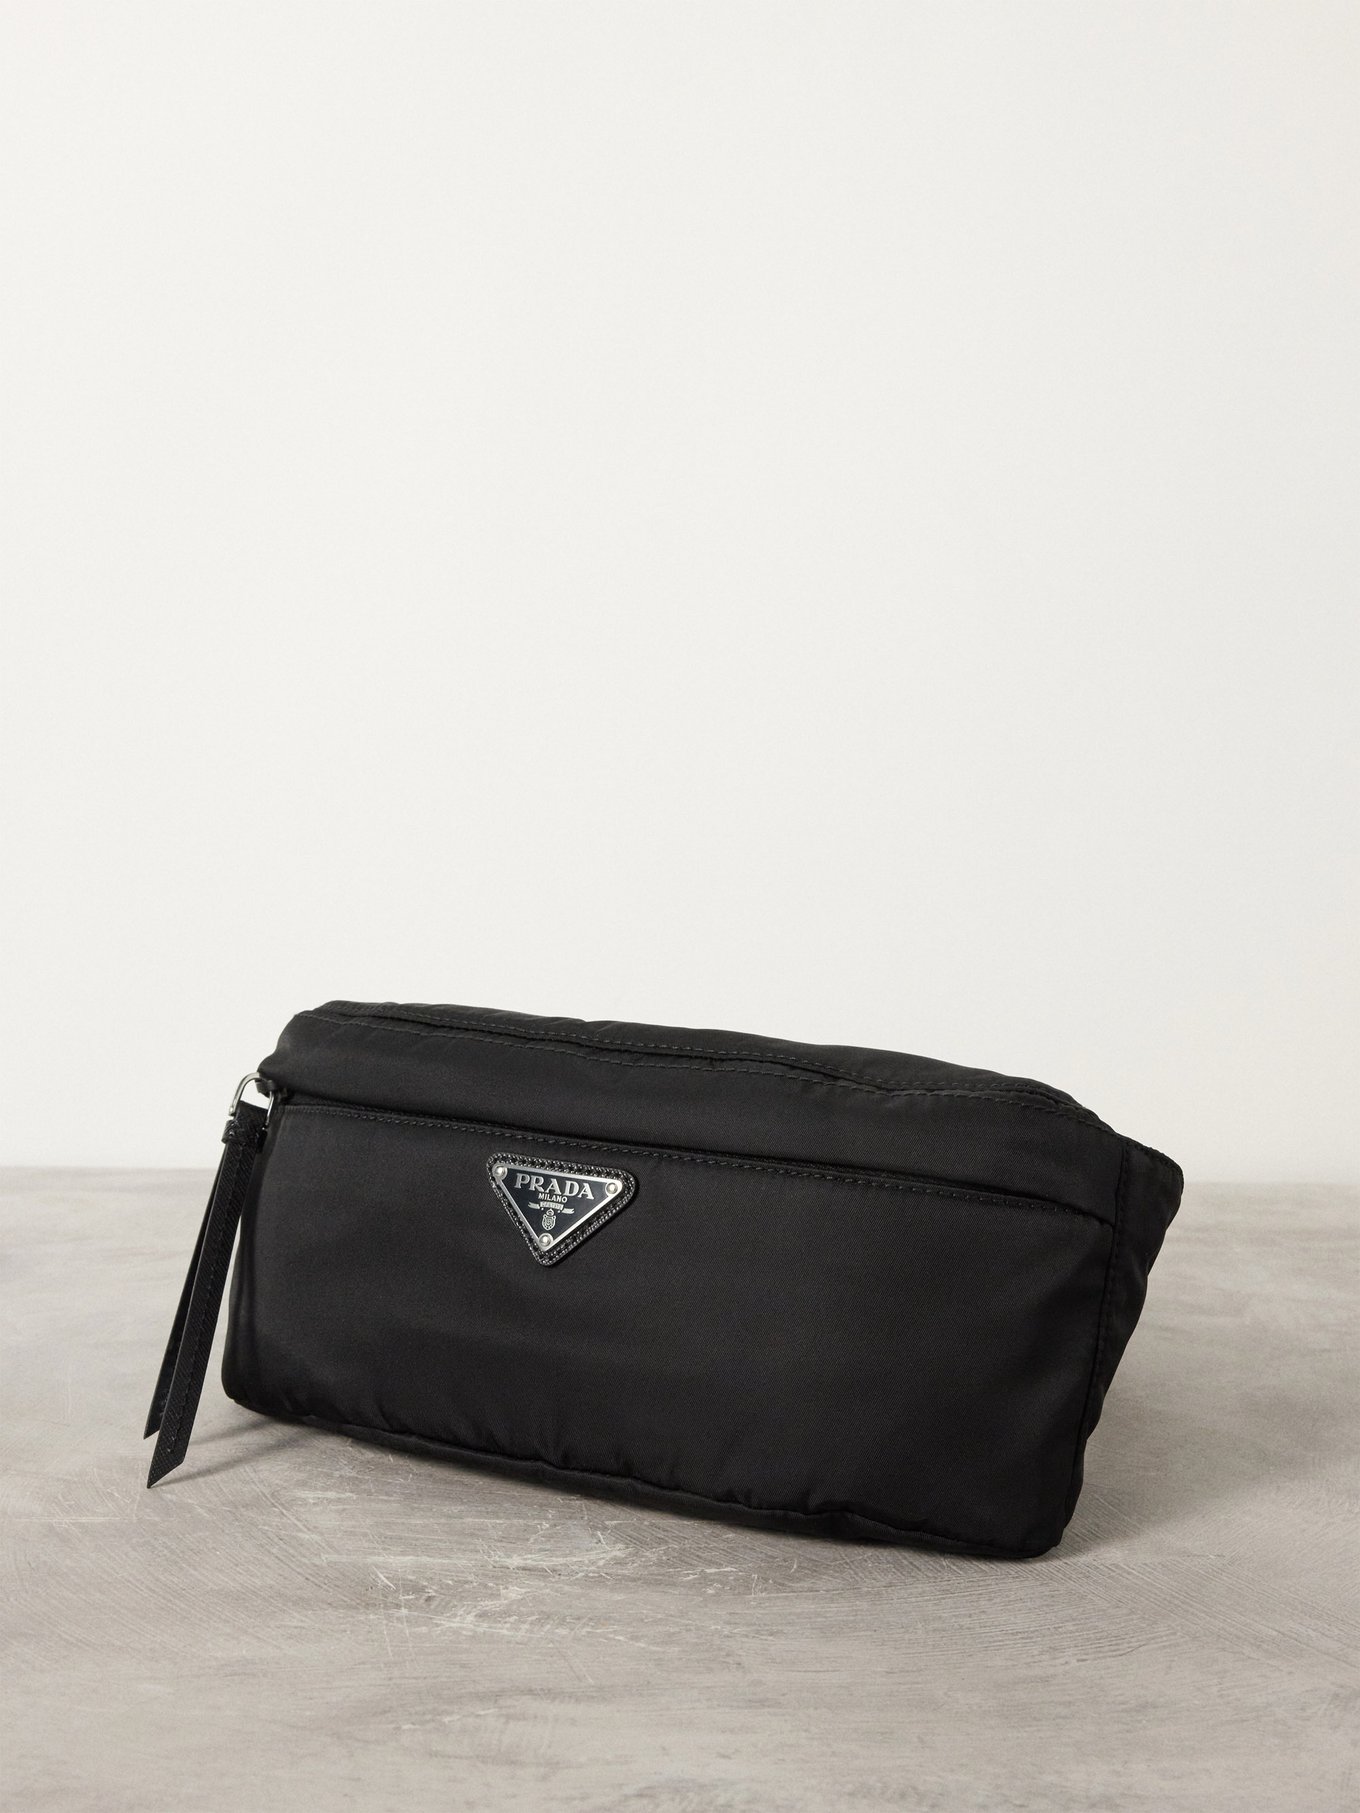 Saint Laurent Black Quilted Logo Detail Leather Belt Bag